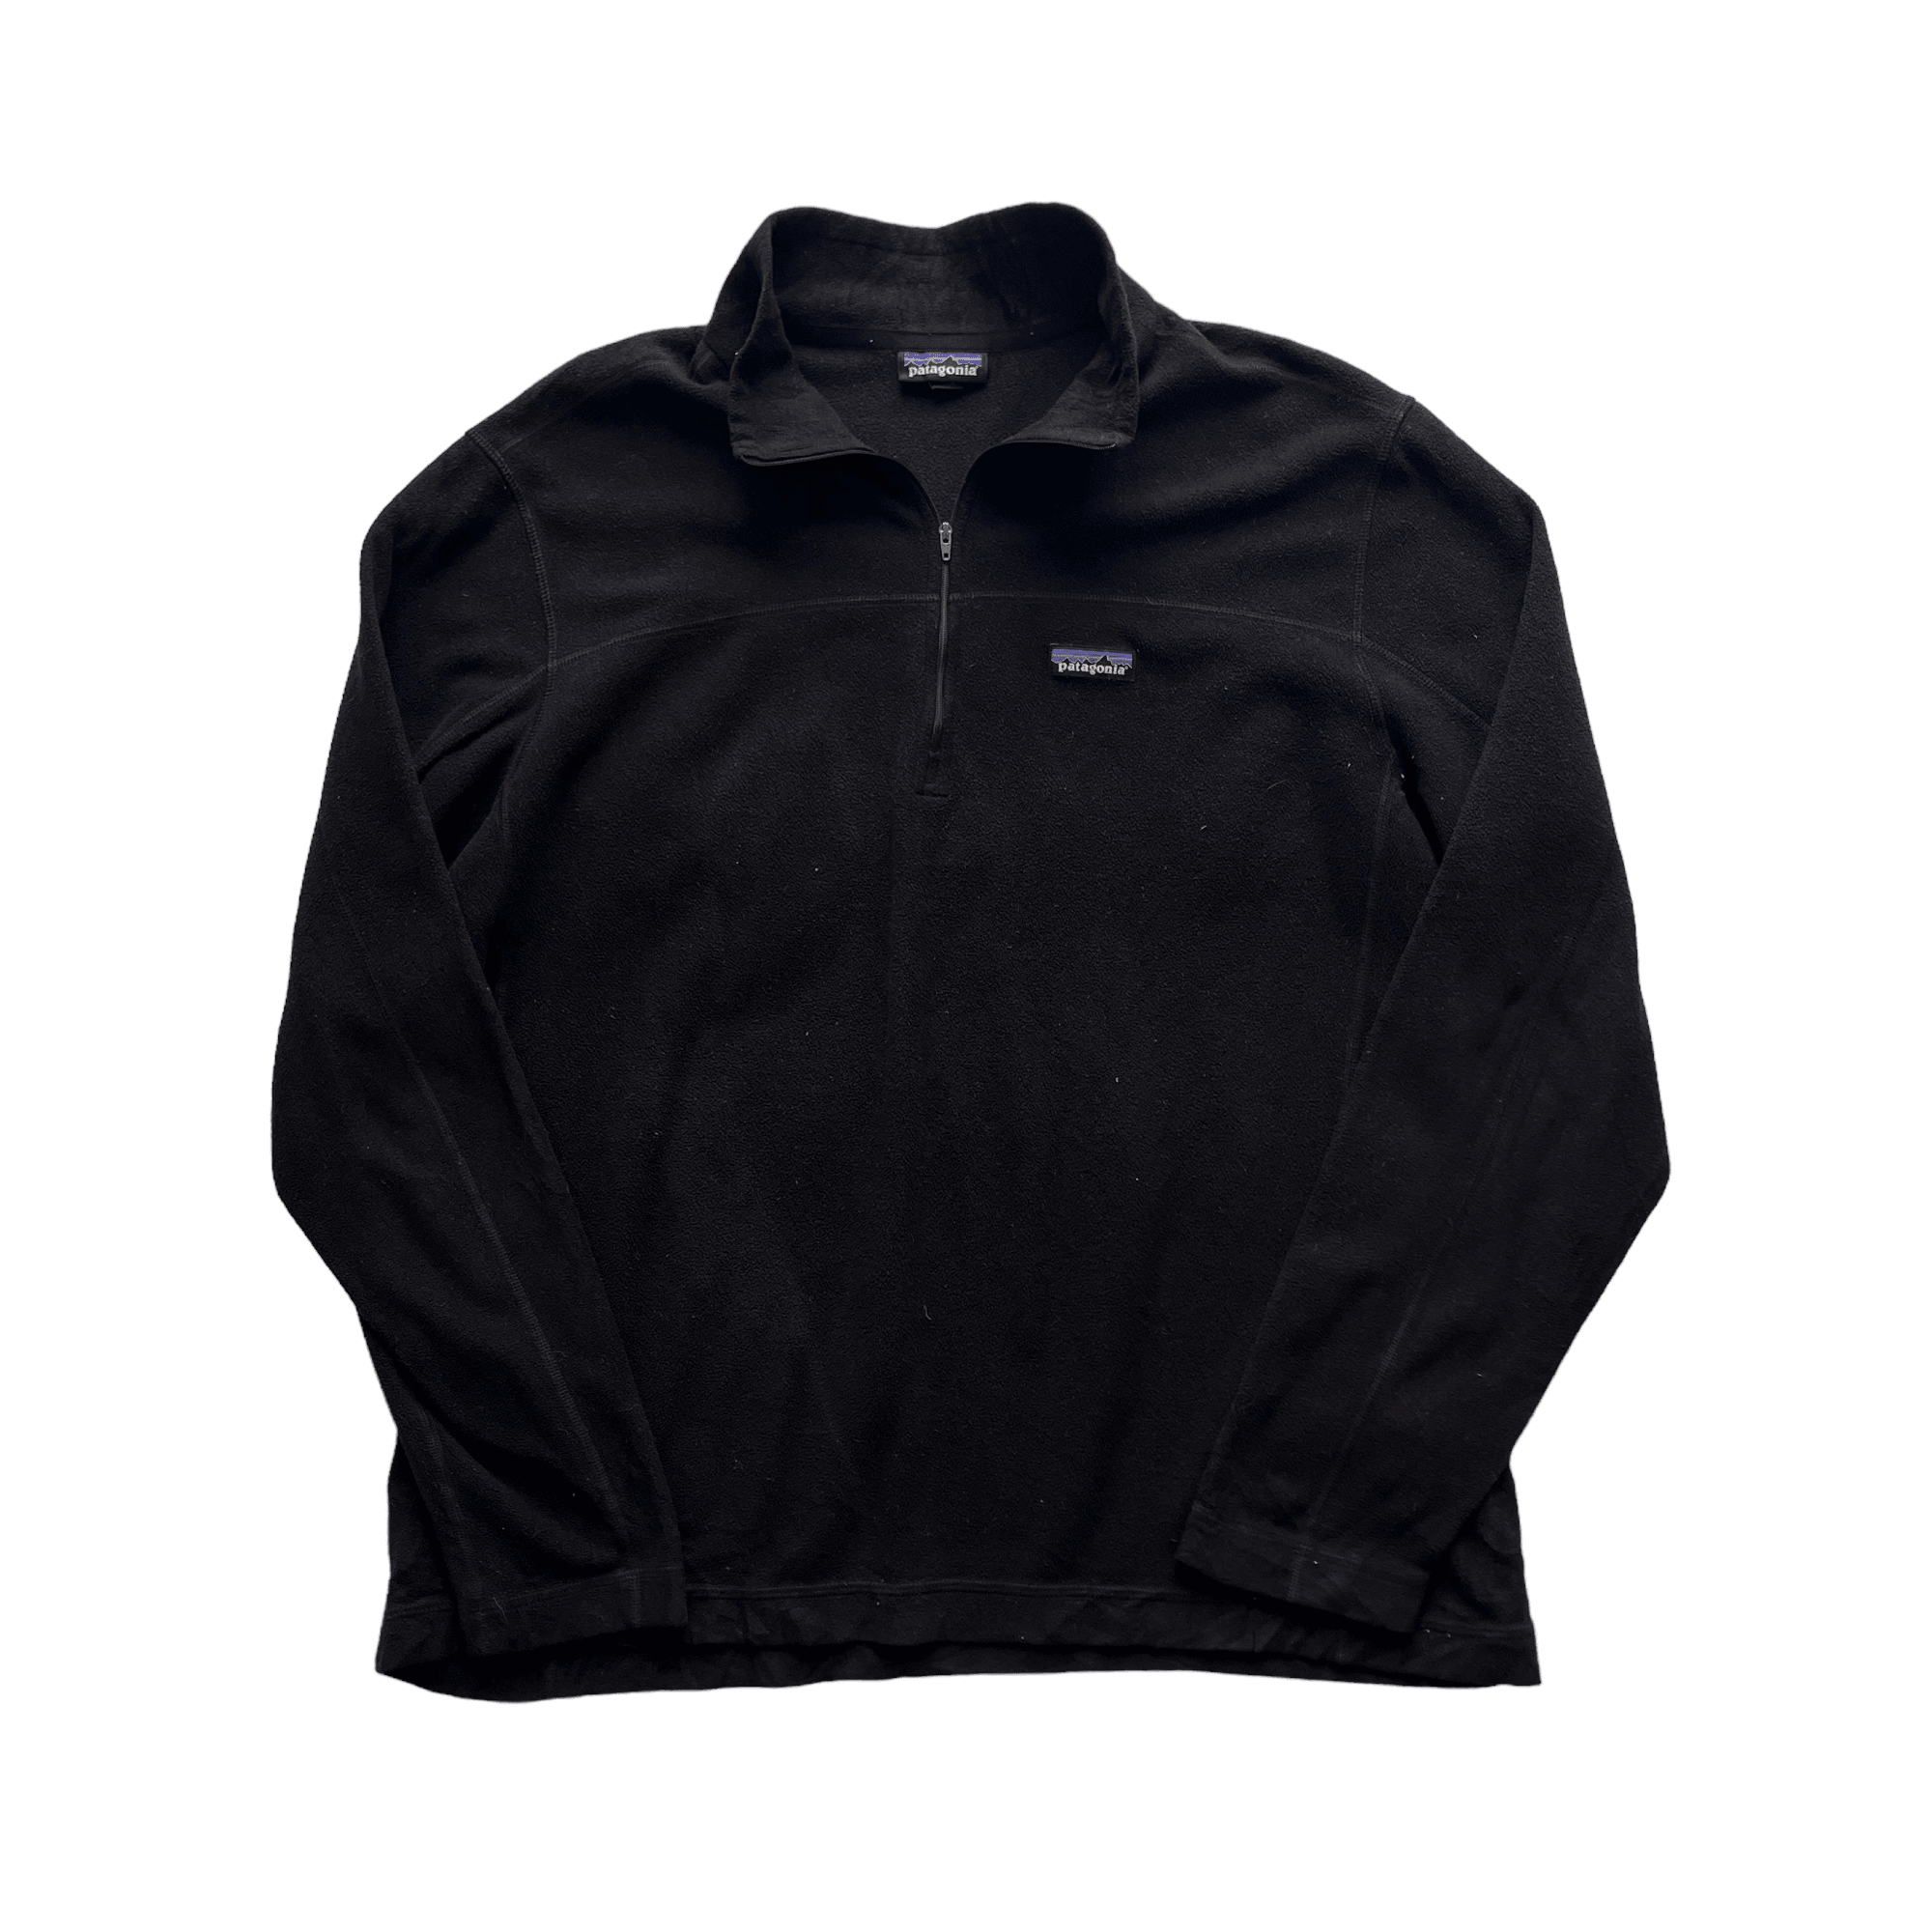 Vintage Black Patagonia Quarter Zip Fleece - Extra Large